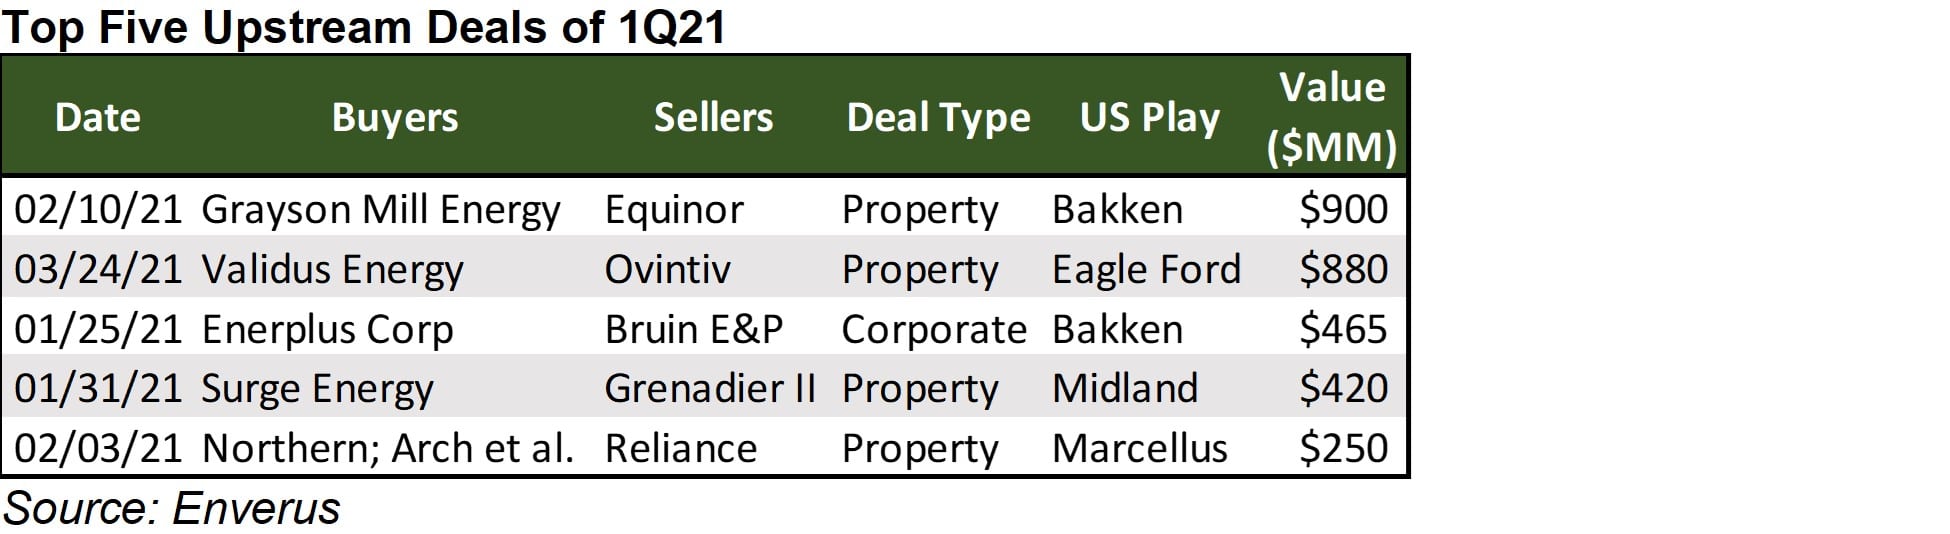 Top Five Upstream Deals of 1Q21